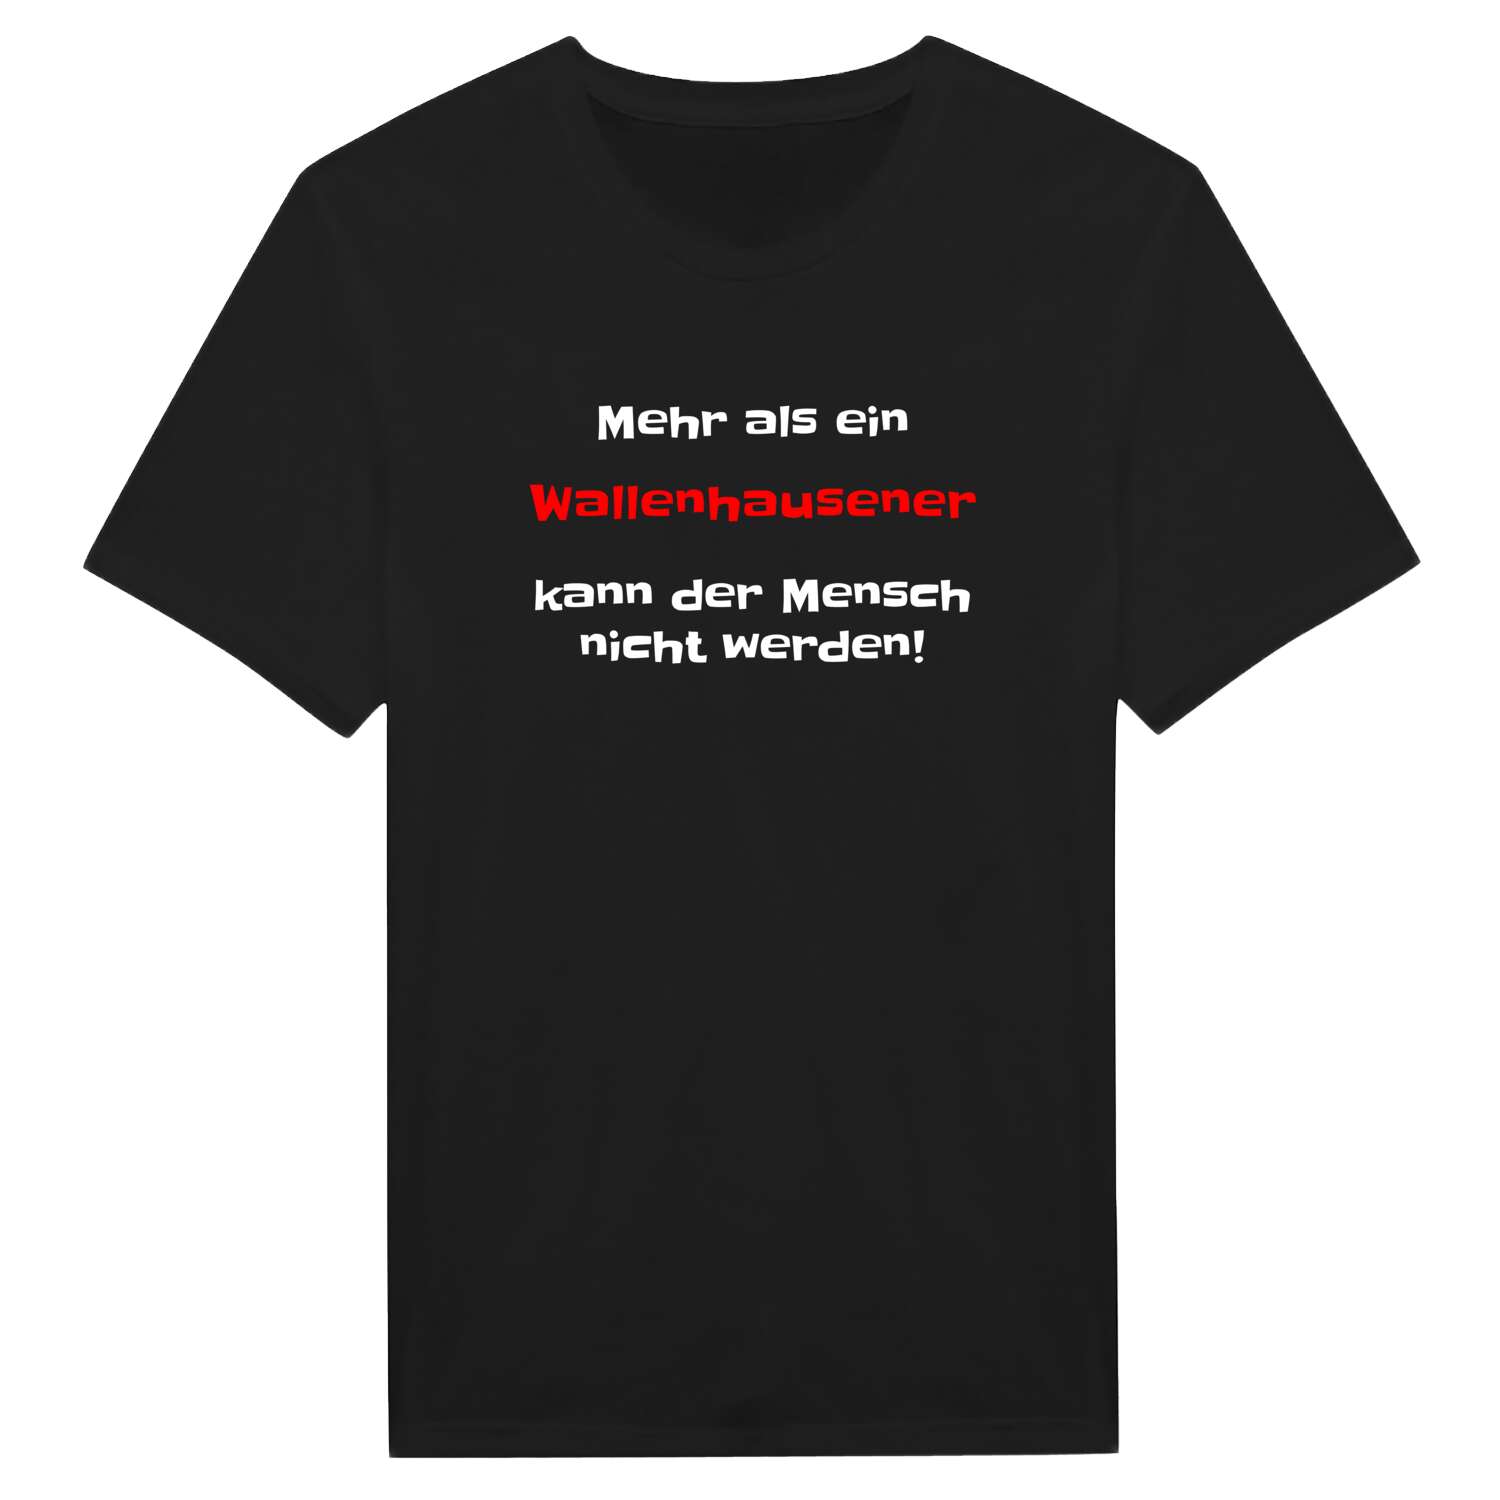 Wallenhausen T-Shirt »Mehr als ein«